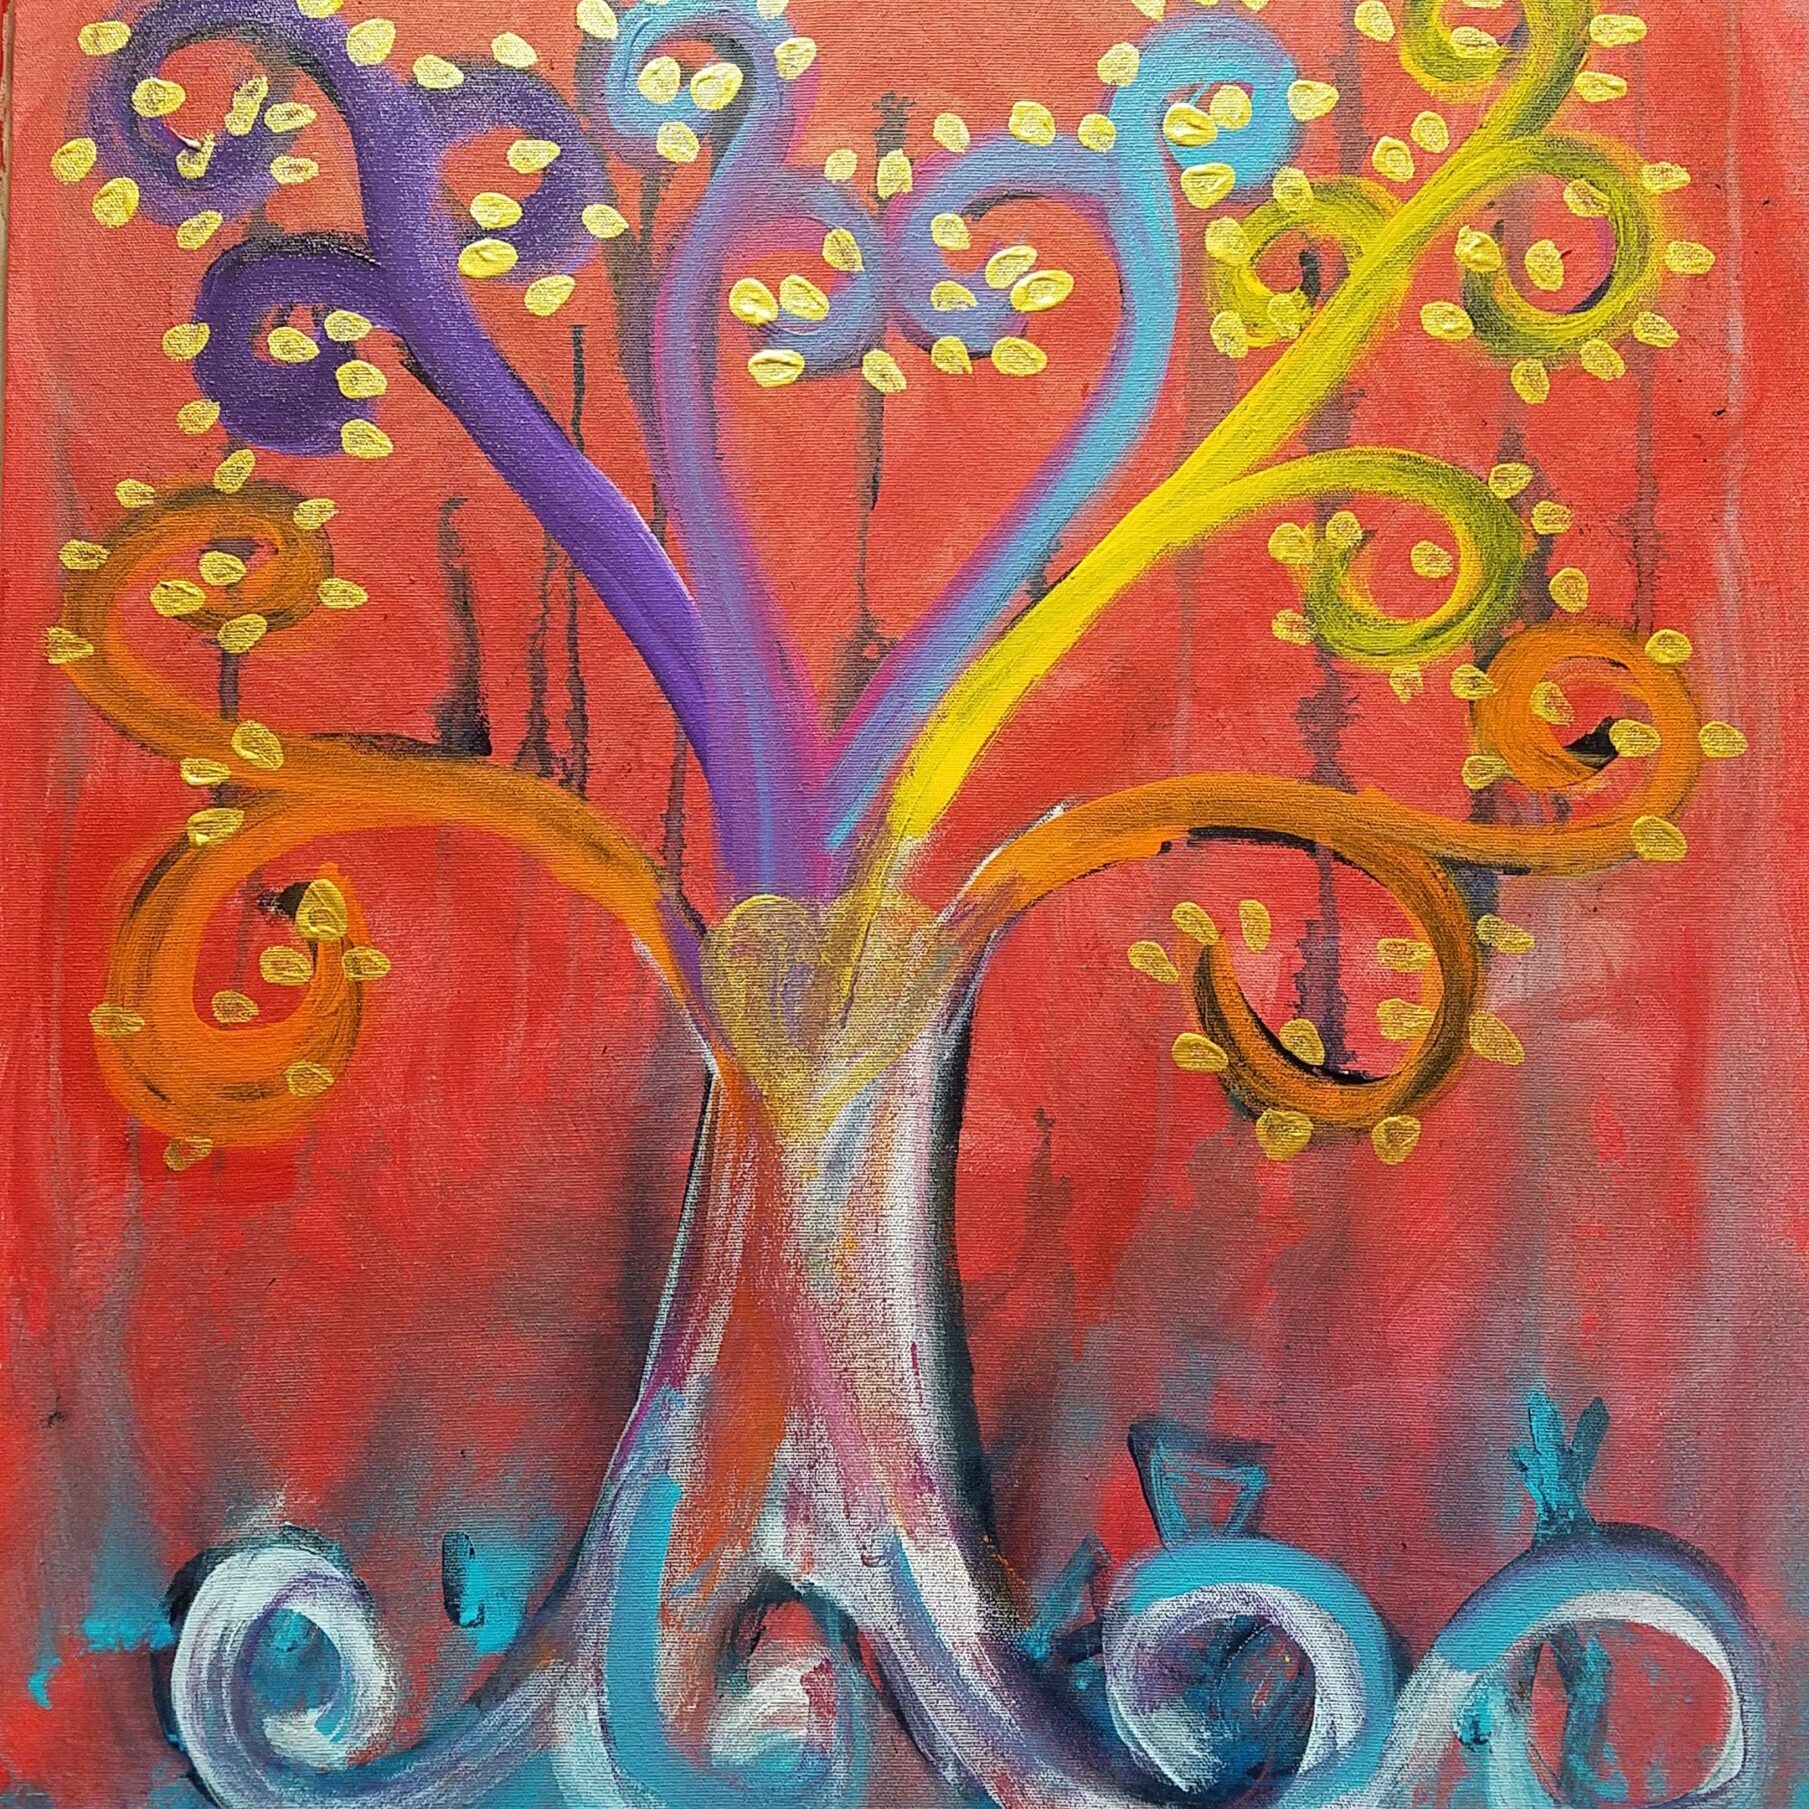 Alchemical Tree
acrylic on canvas
24 x 24
$200
